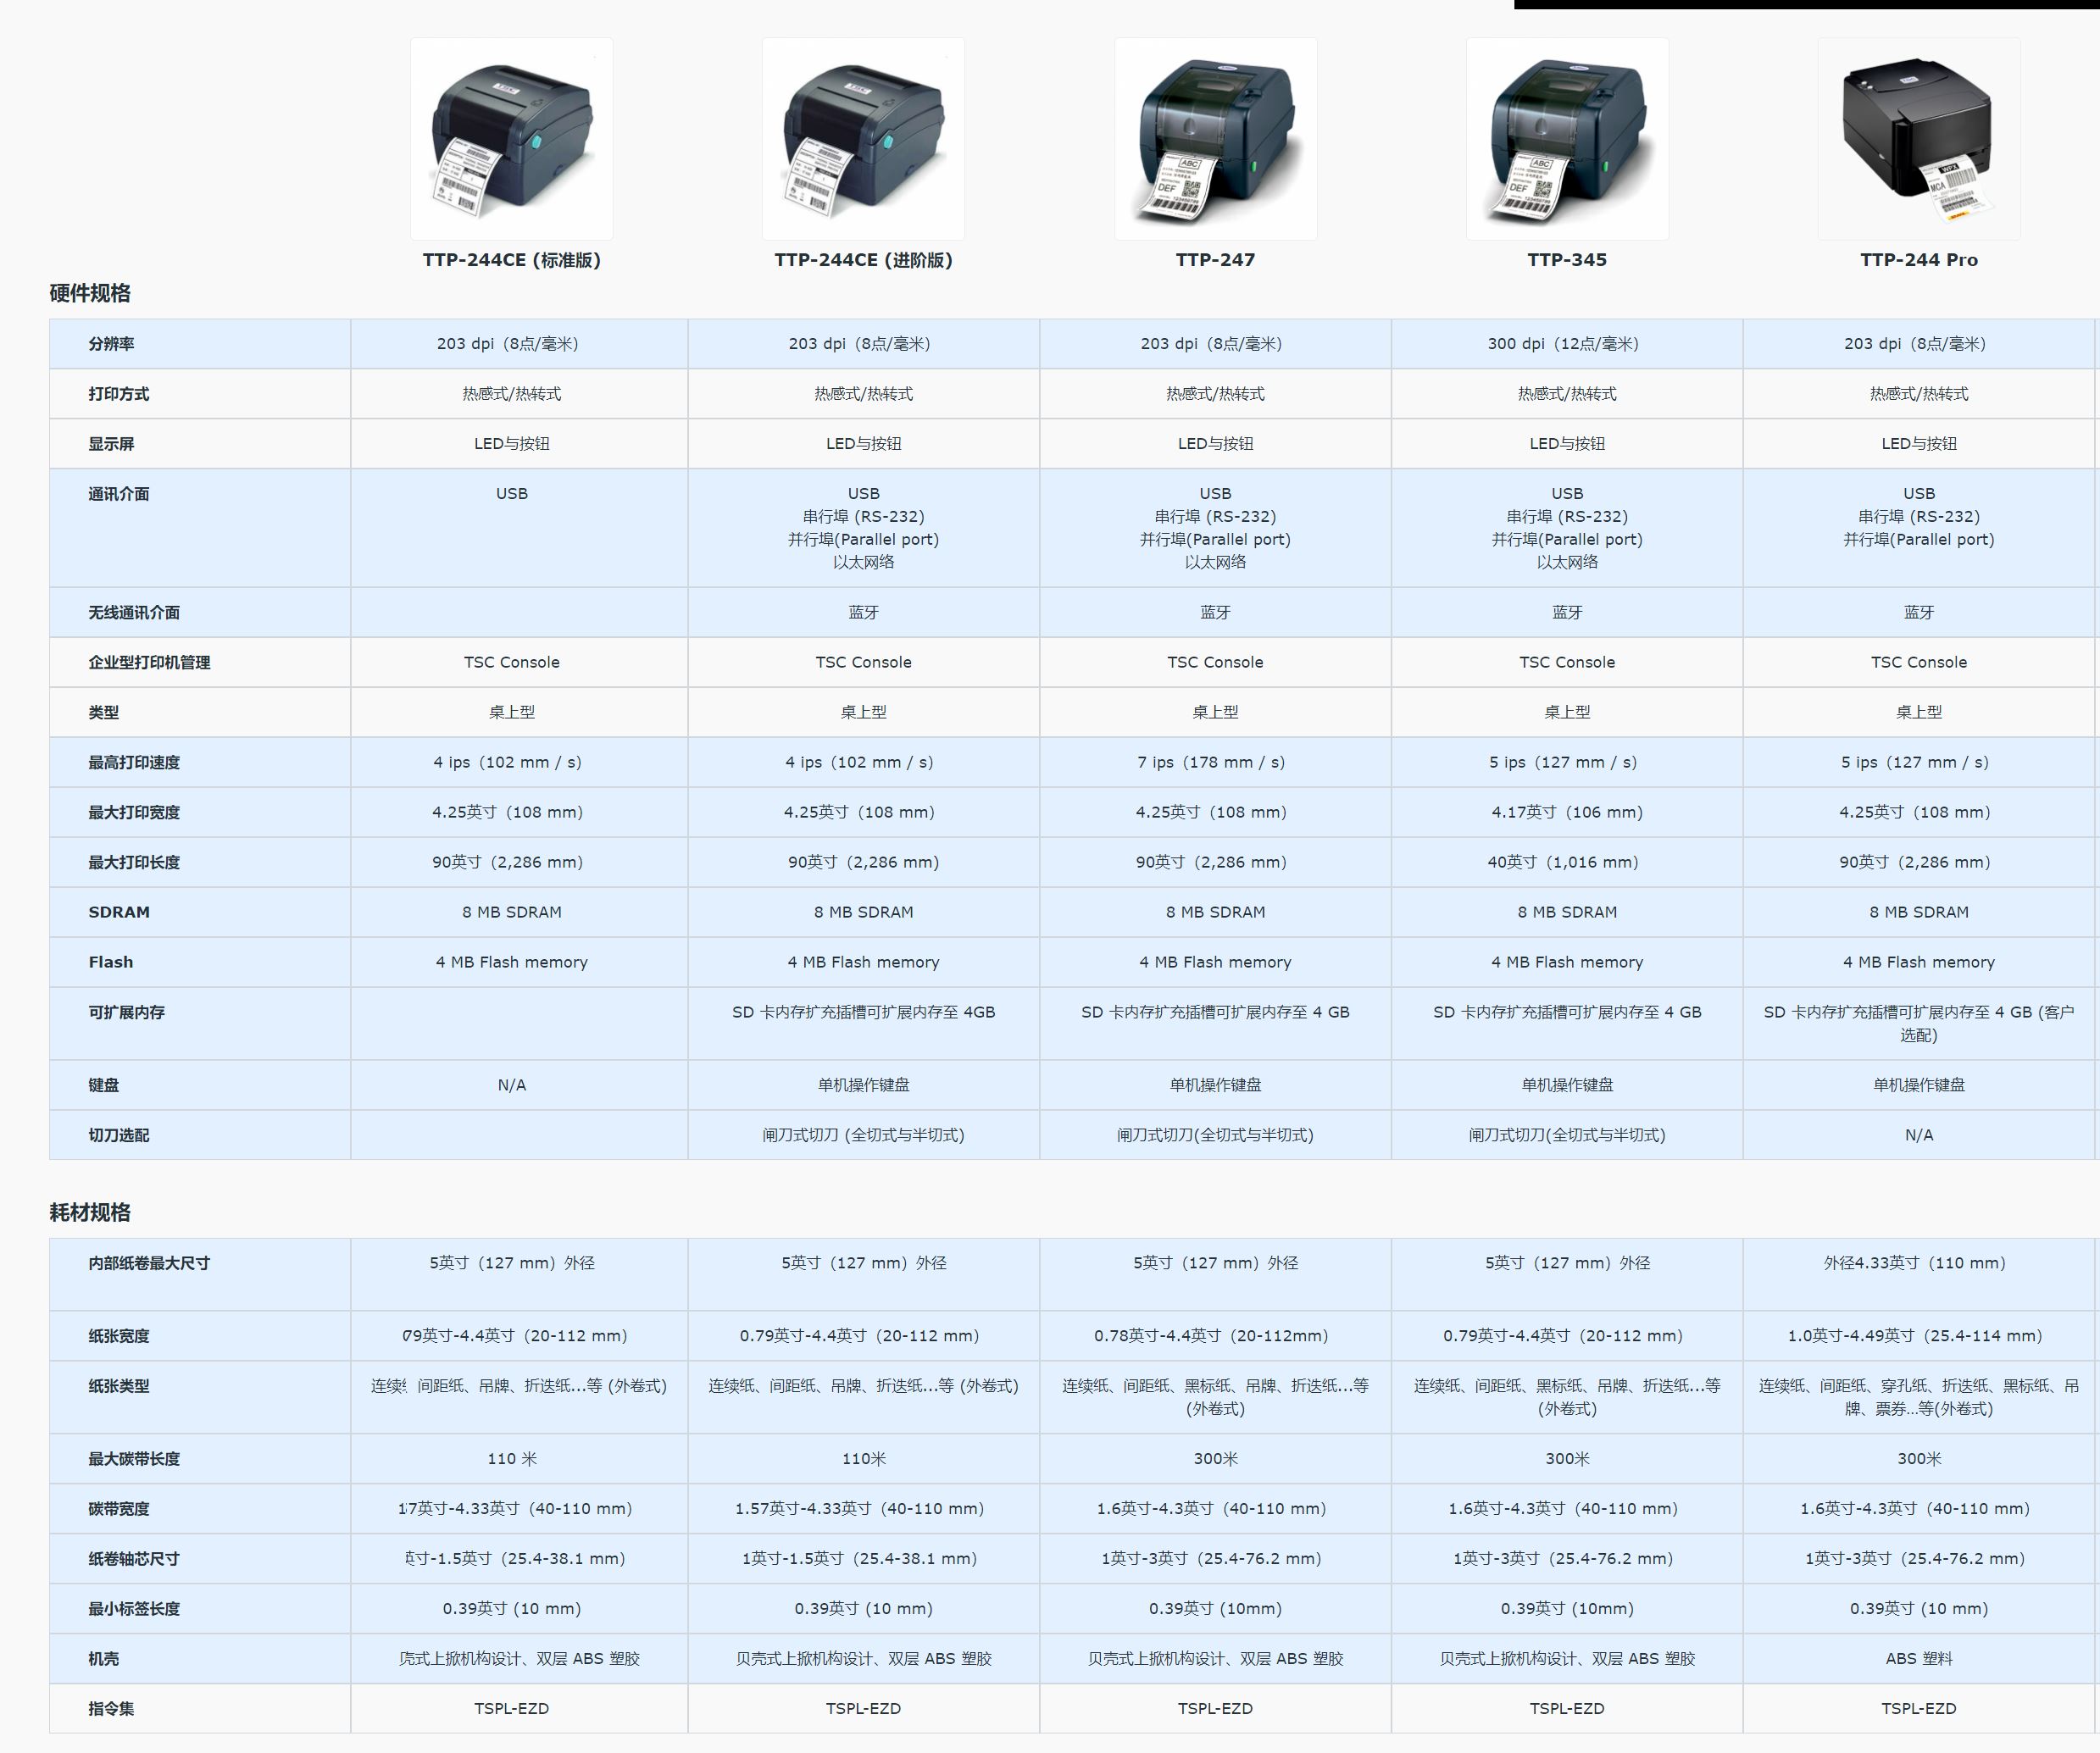 TTP系列4英吋桌上型打印机 _ TSC Printers.png